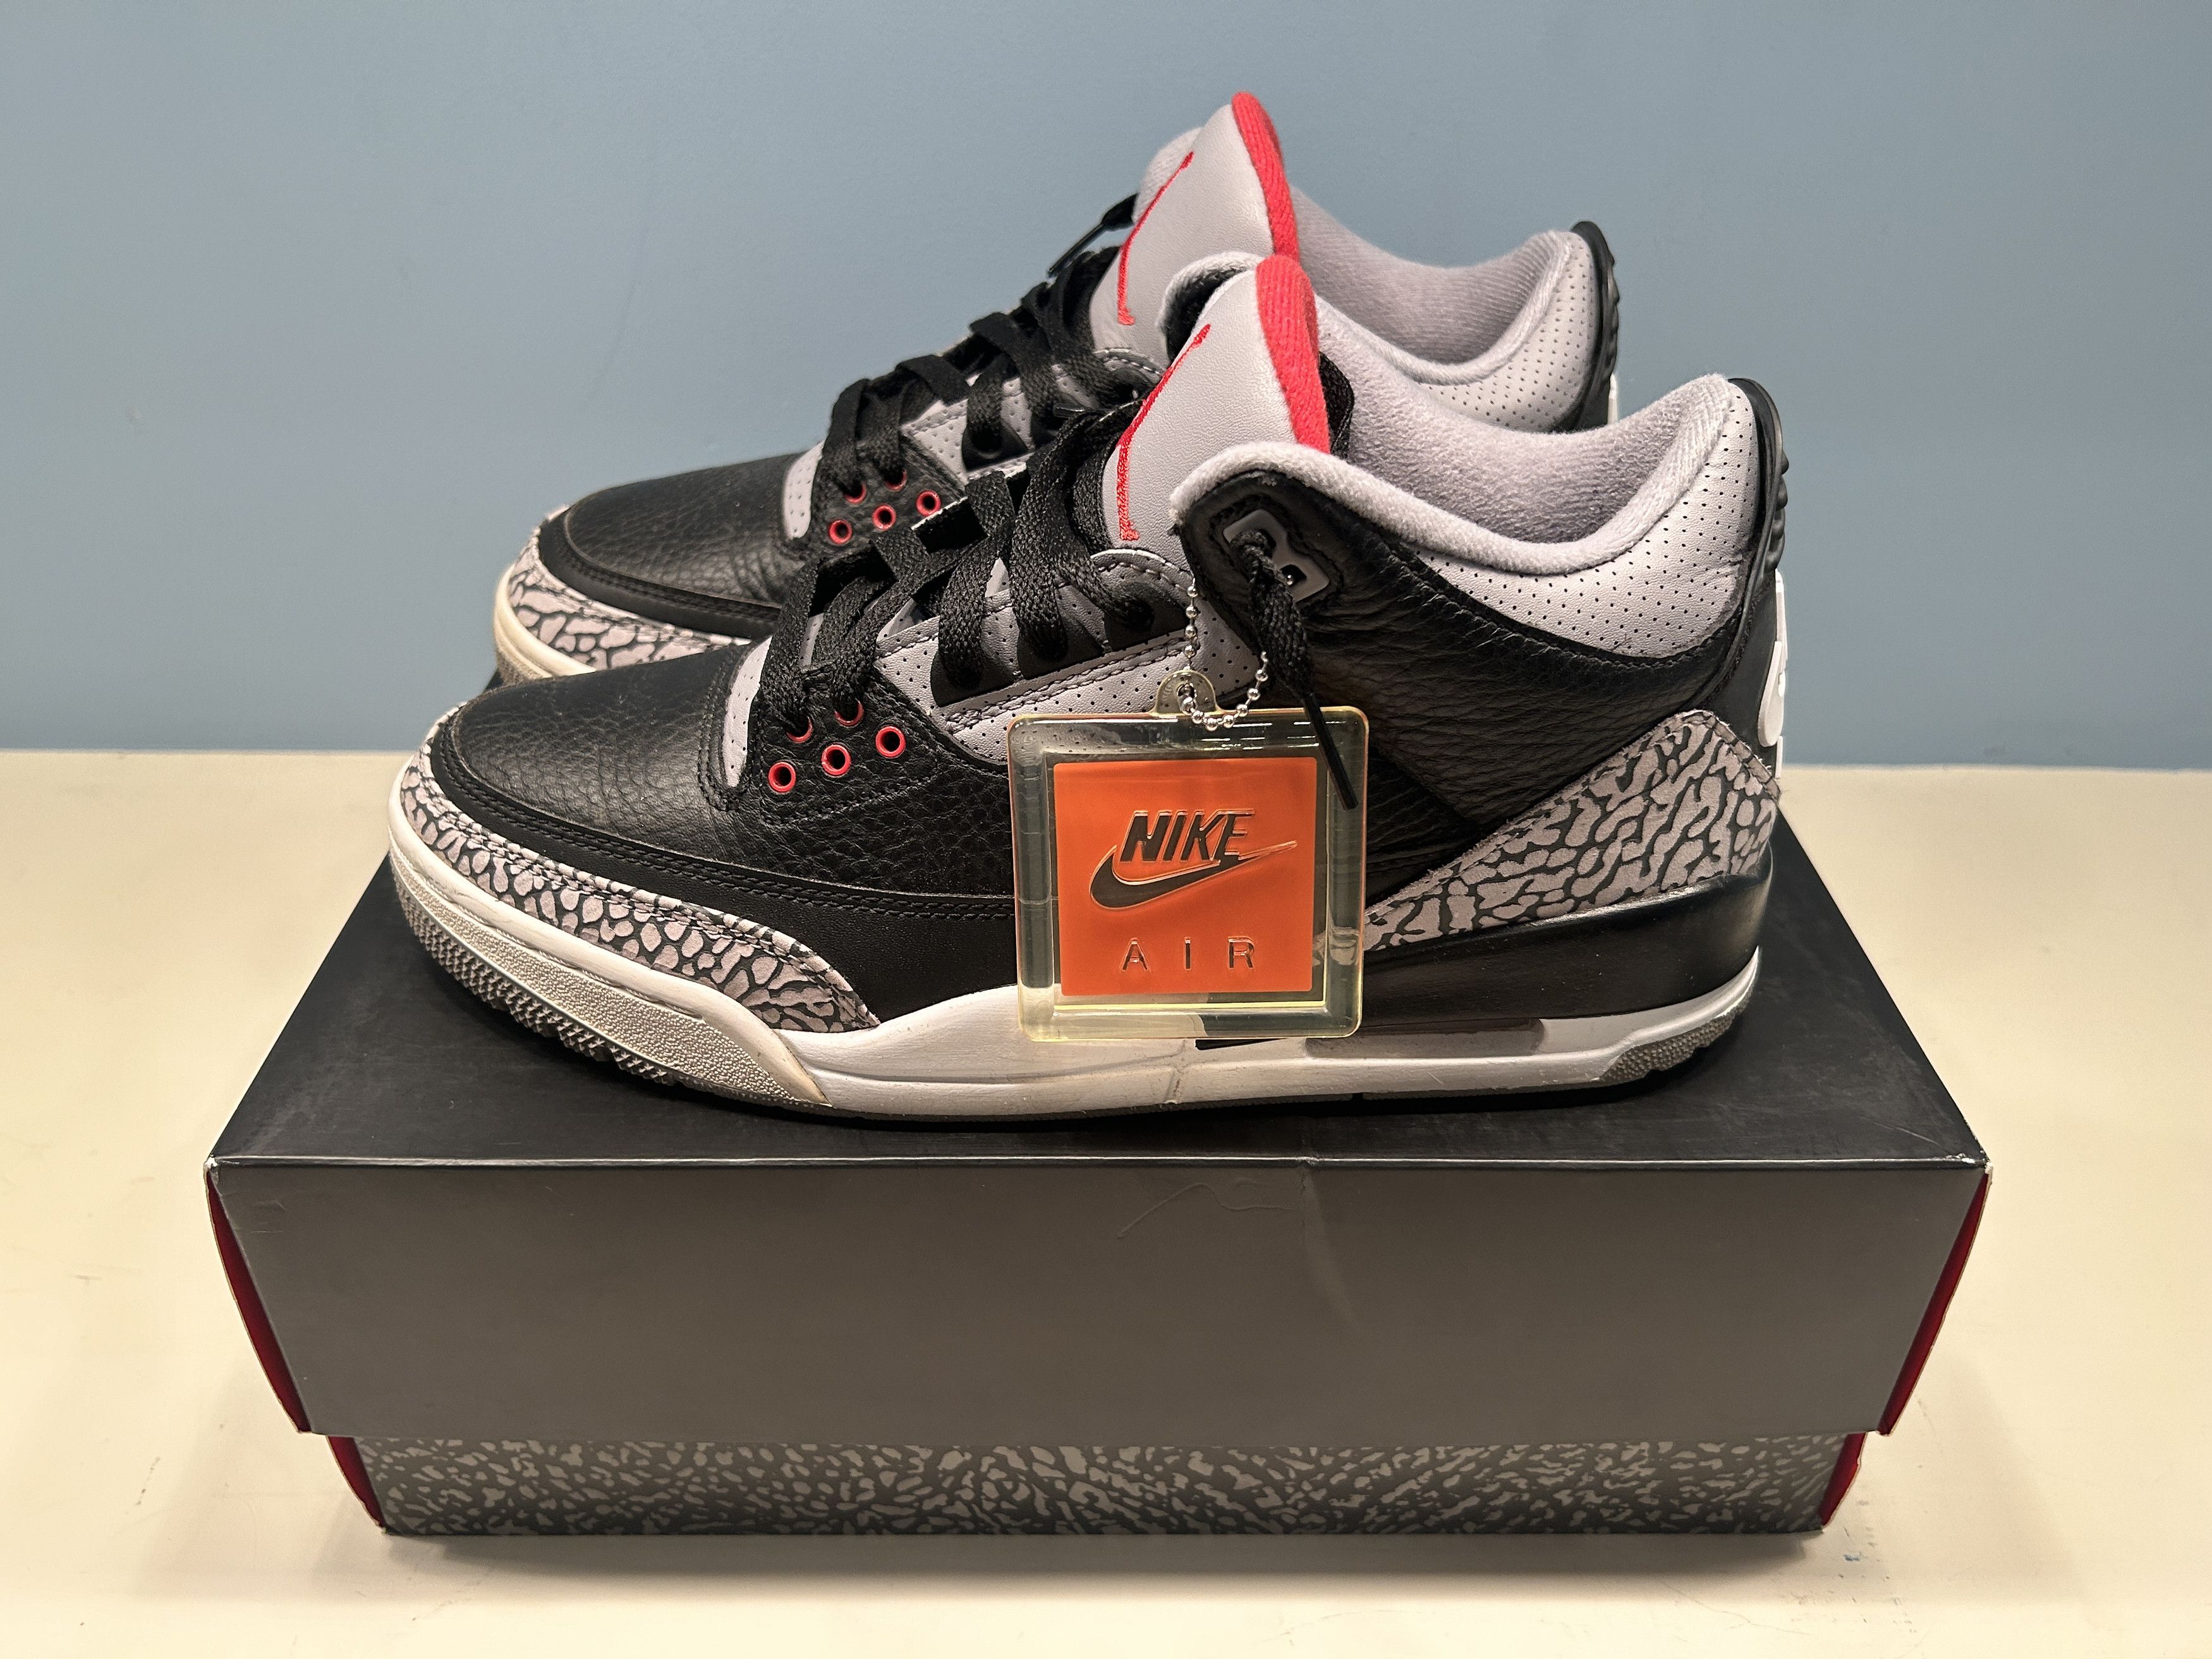 Pre-owned Jordan Nike Jordan 3 Retro Black Cement (2018) Shoes